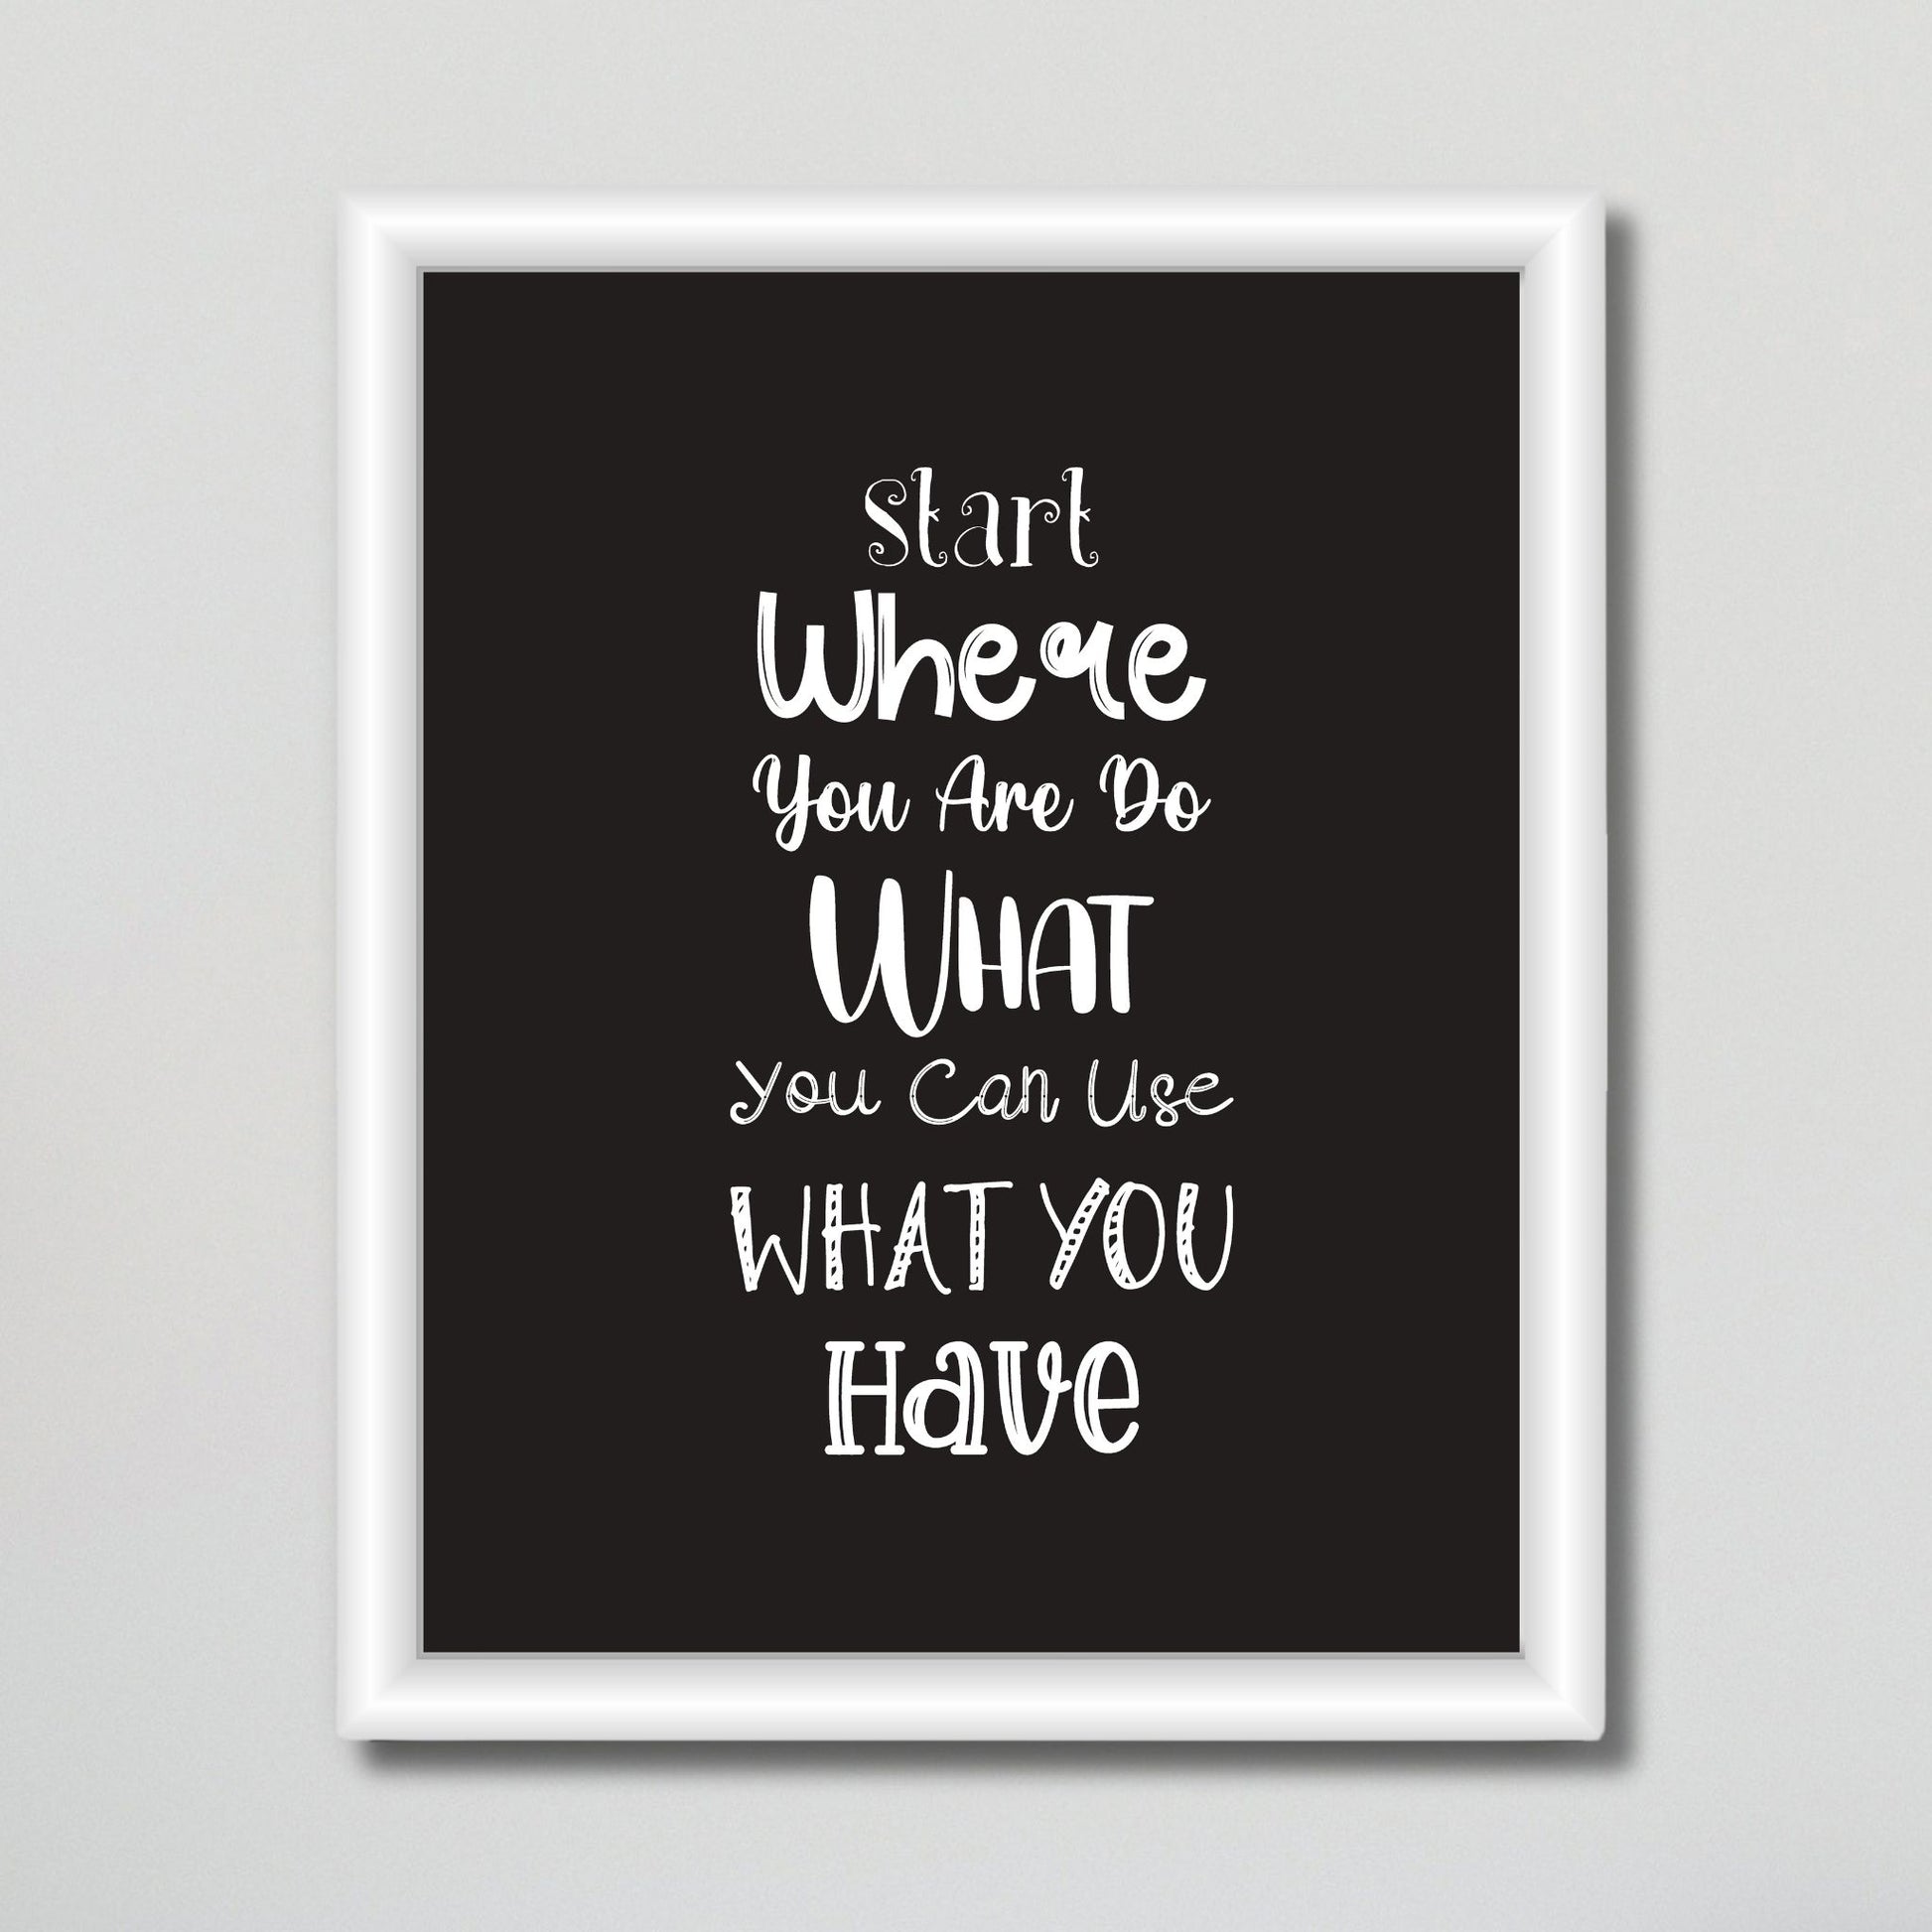 Grafisk tekstplakat med tekst "Start where you are, do what you can, use what you have" med hvit tekst på sort bakgrunn. Illustrasjon viser plakat i hvit ramme på en vegg.